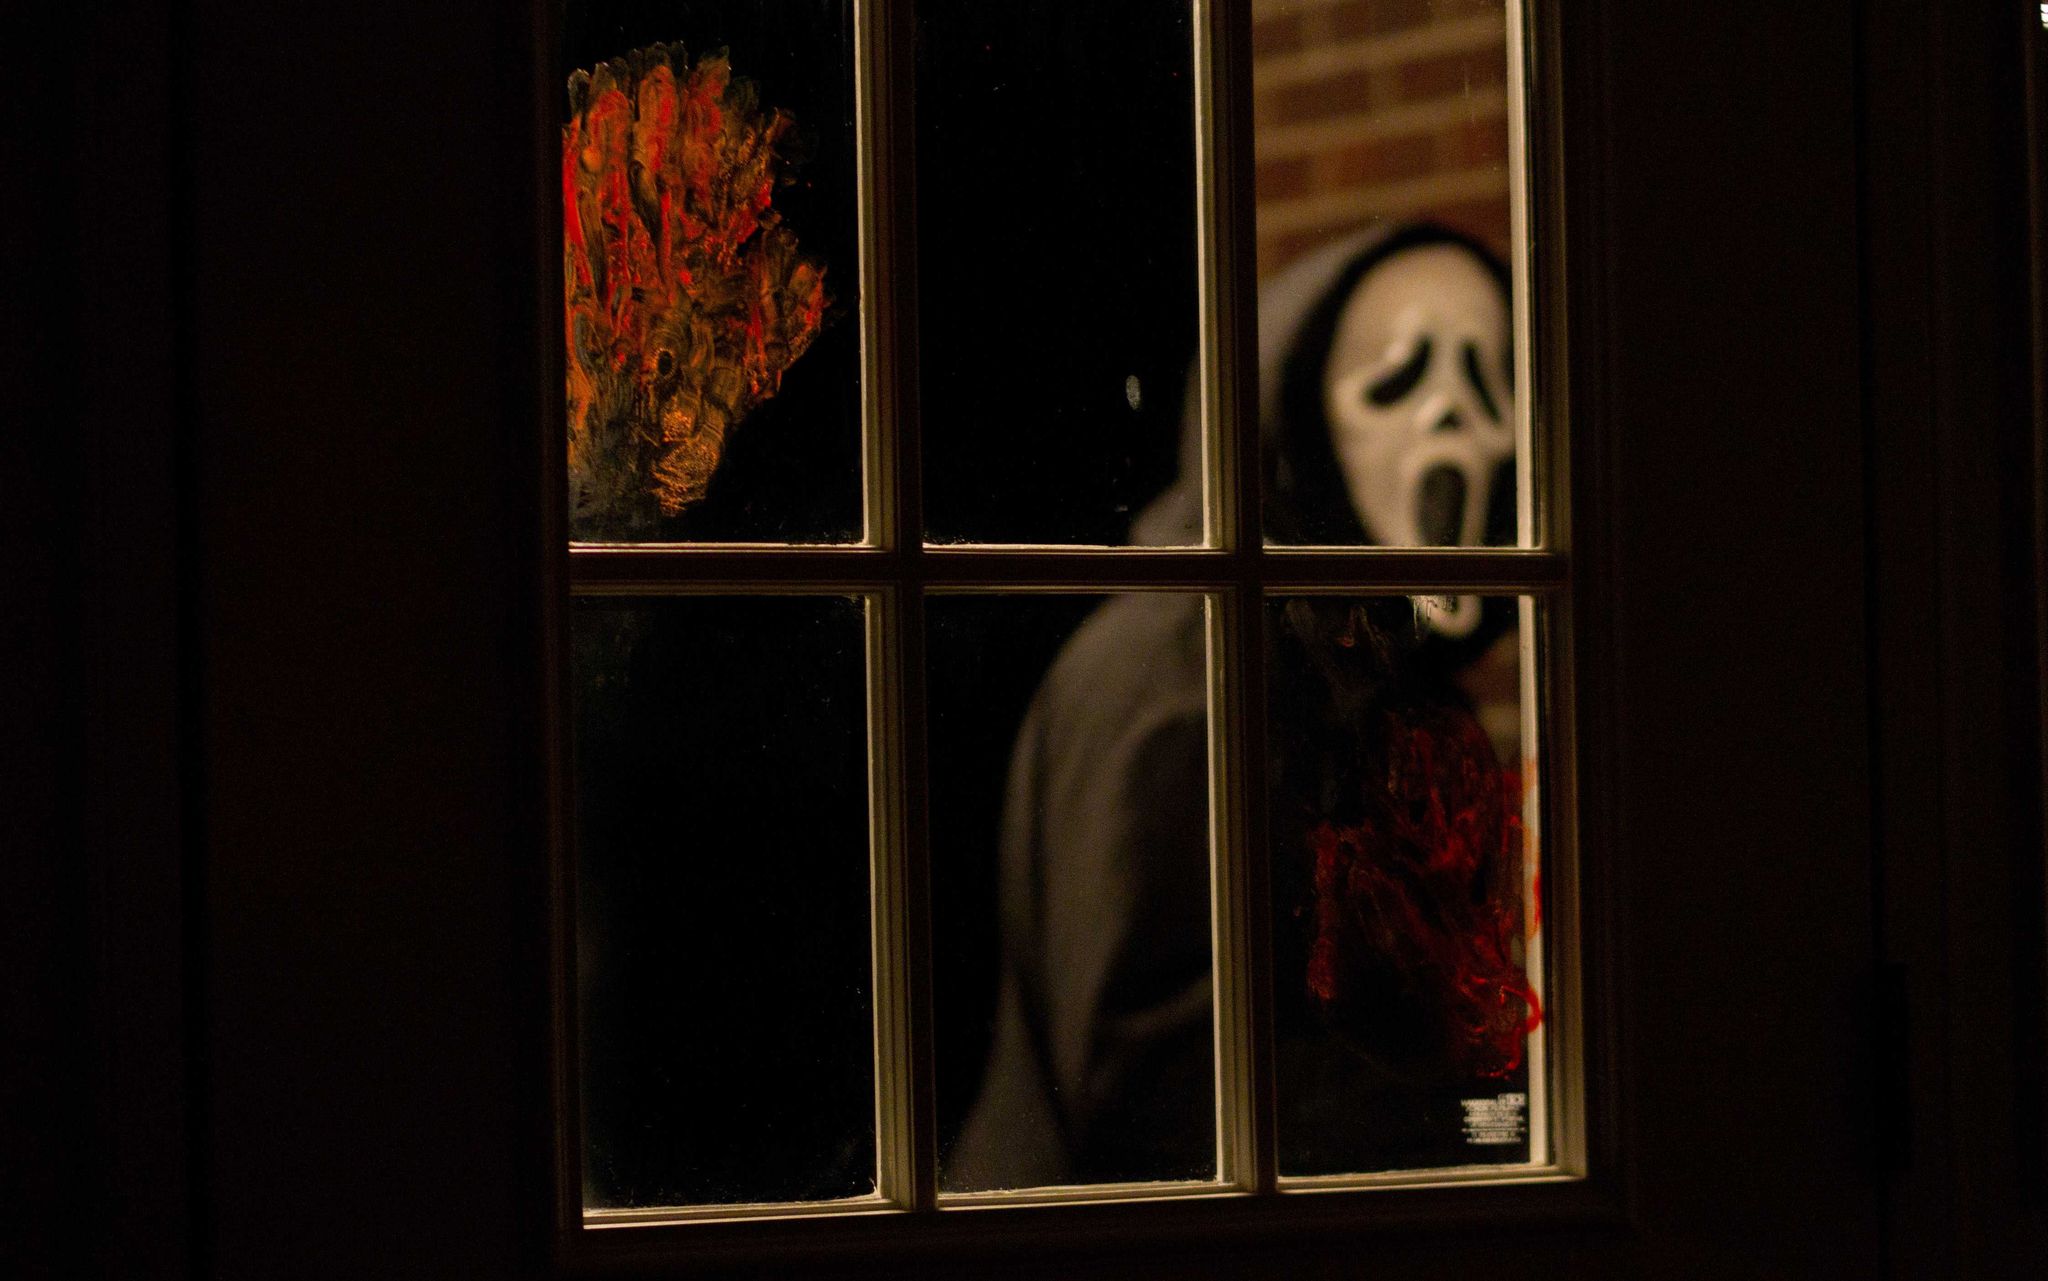 Scream estará en la selección de películas de terror de Amazon Prime para Halloween.